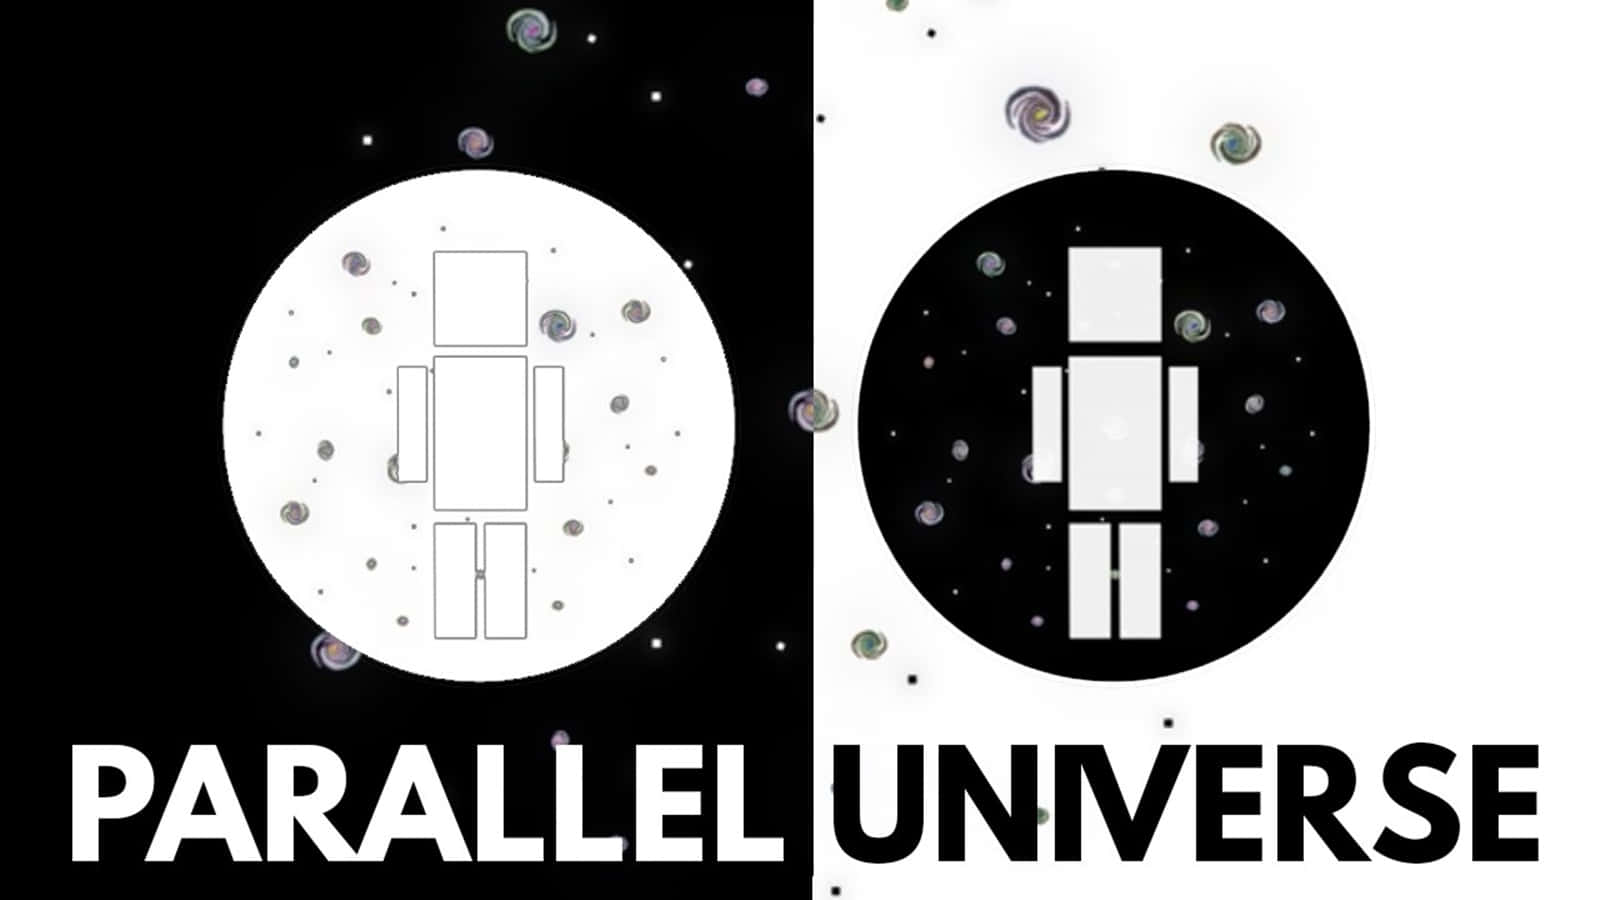 Parallel Universe Concept Art Wallpaper